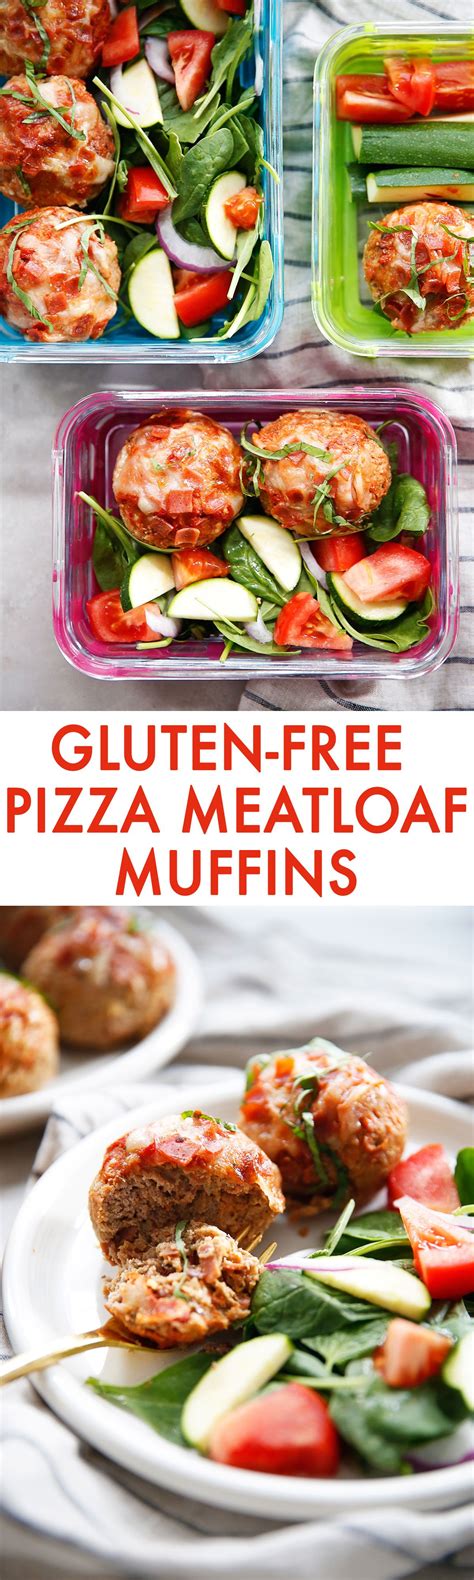 Pizza Meatloaf Muffins Gluten Free Recipe Recipes Pizza Meatloaf Clean Eating Recipes